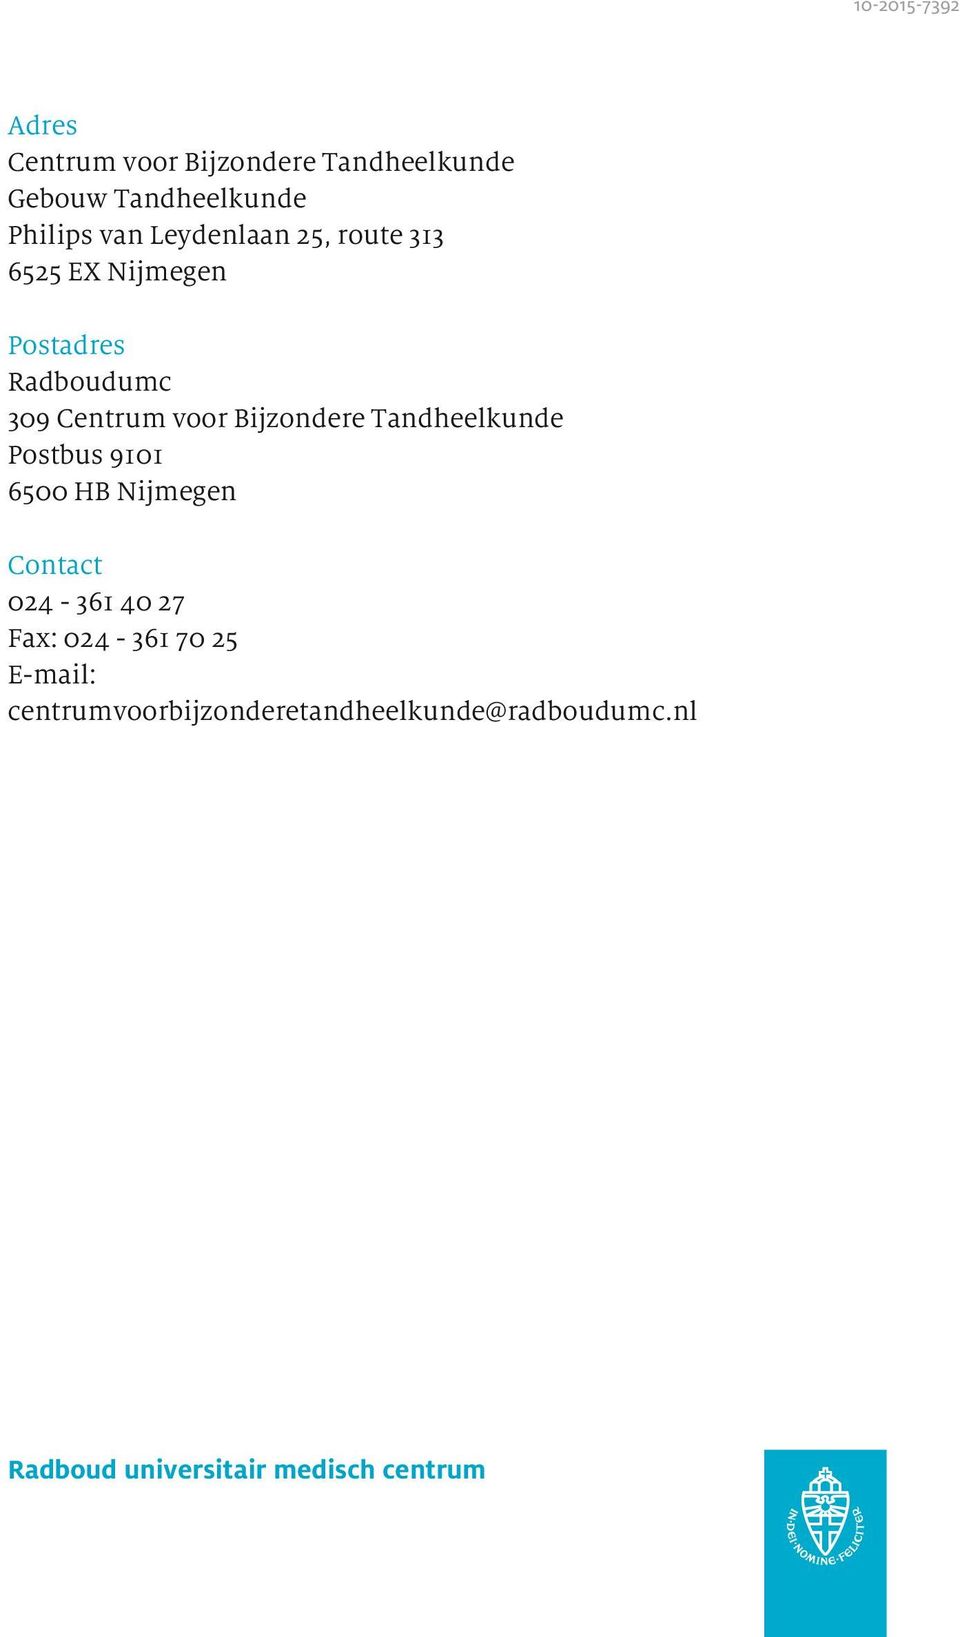 Bijzondere Tandheelkunde Postbus 9101 6500 HB Nijmegen Contact 024-361 40 27 Fax: 024-361